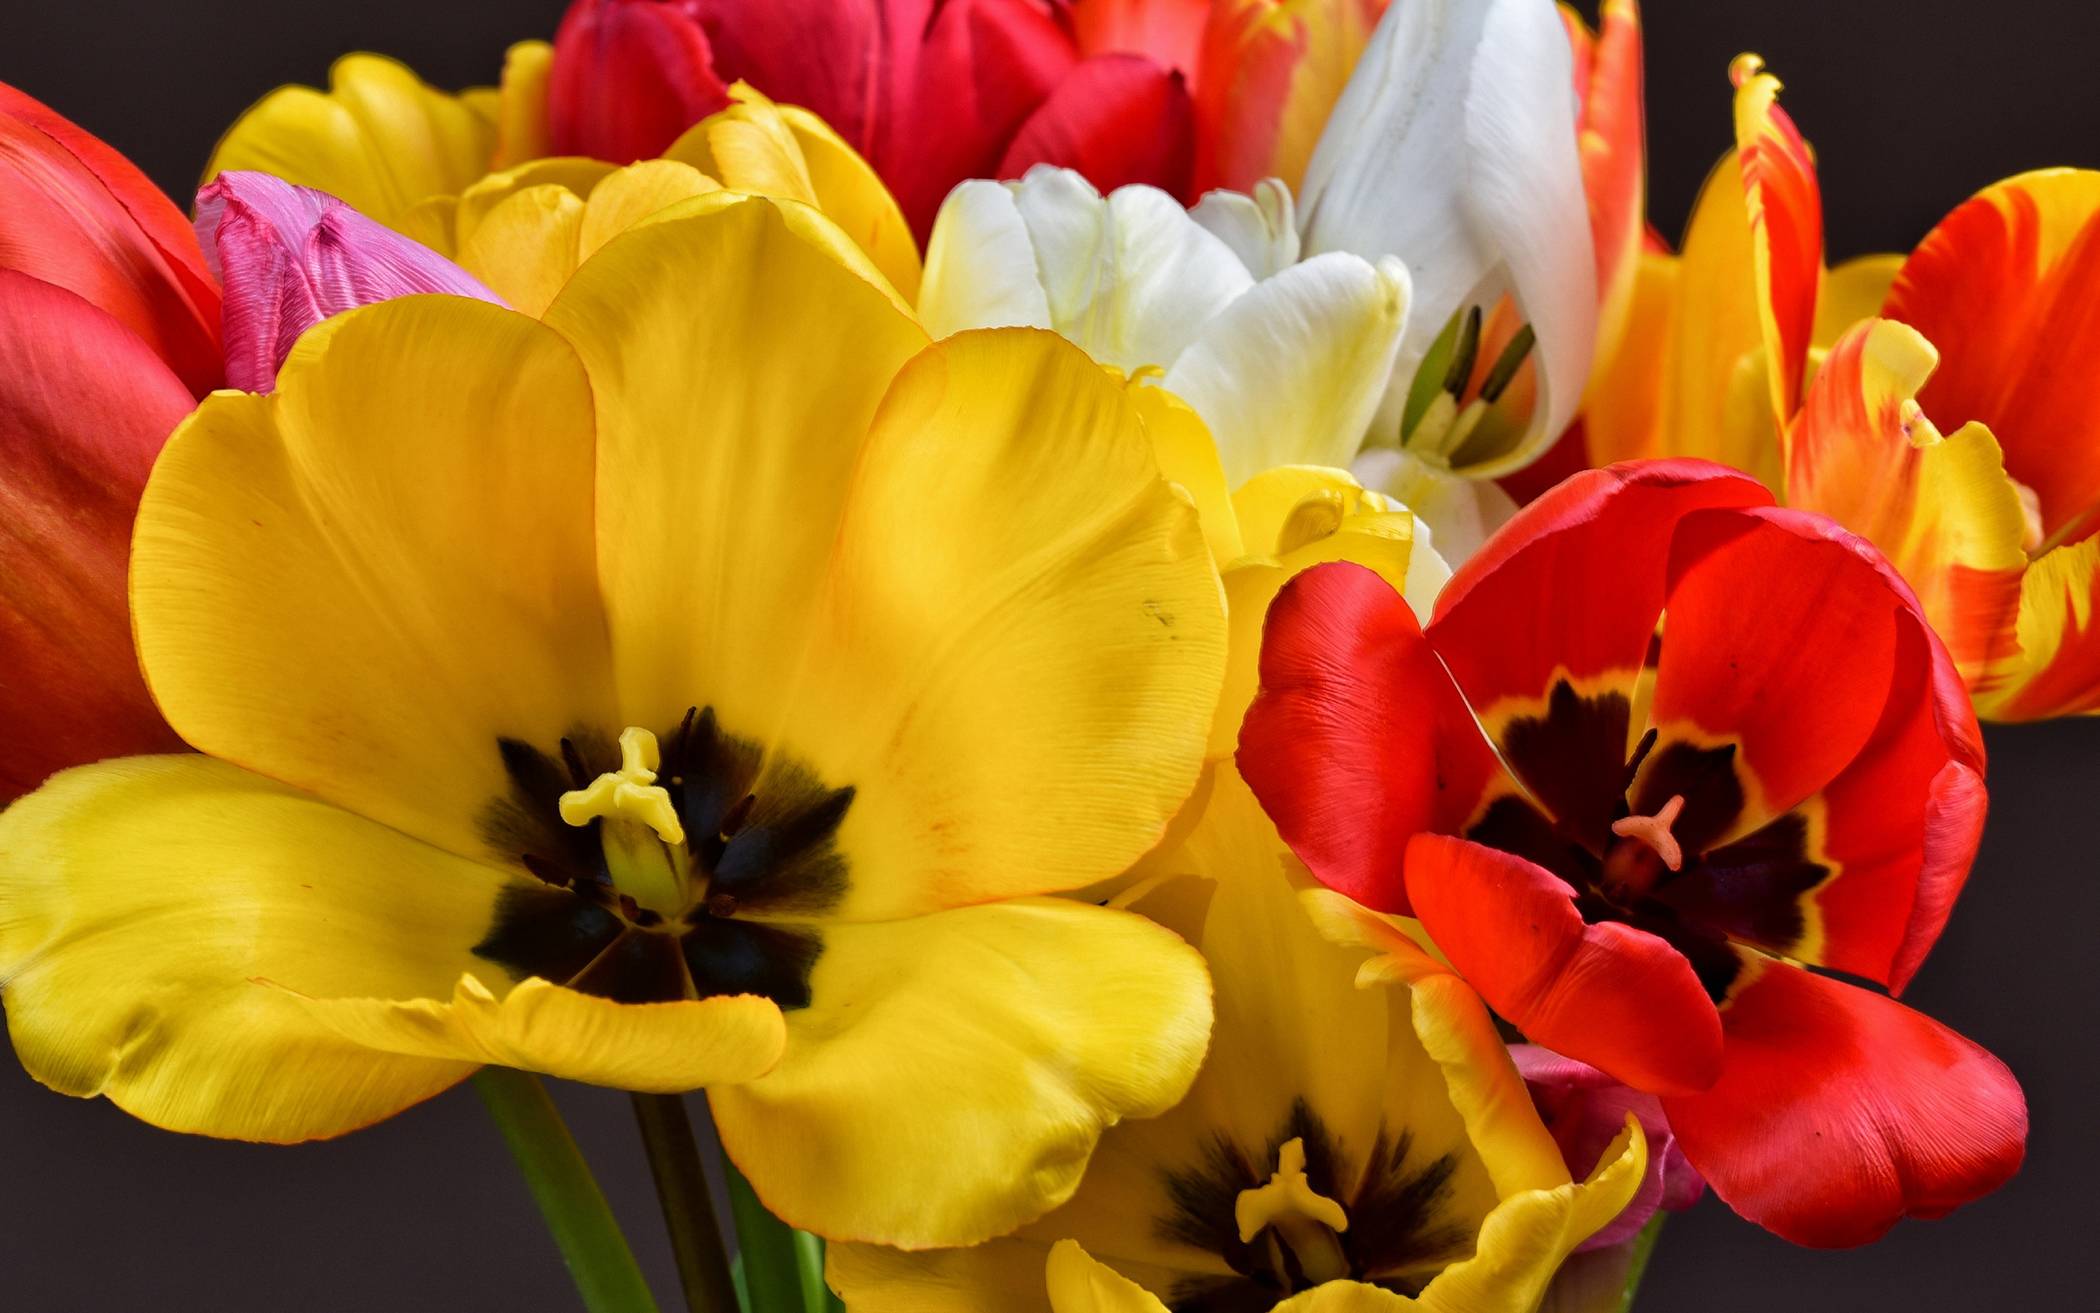  Auch Tulpen, die typischen Frühlingsblumen, gibt es auf dem Ölbergmarkt. 